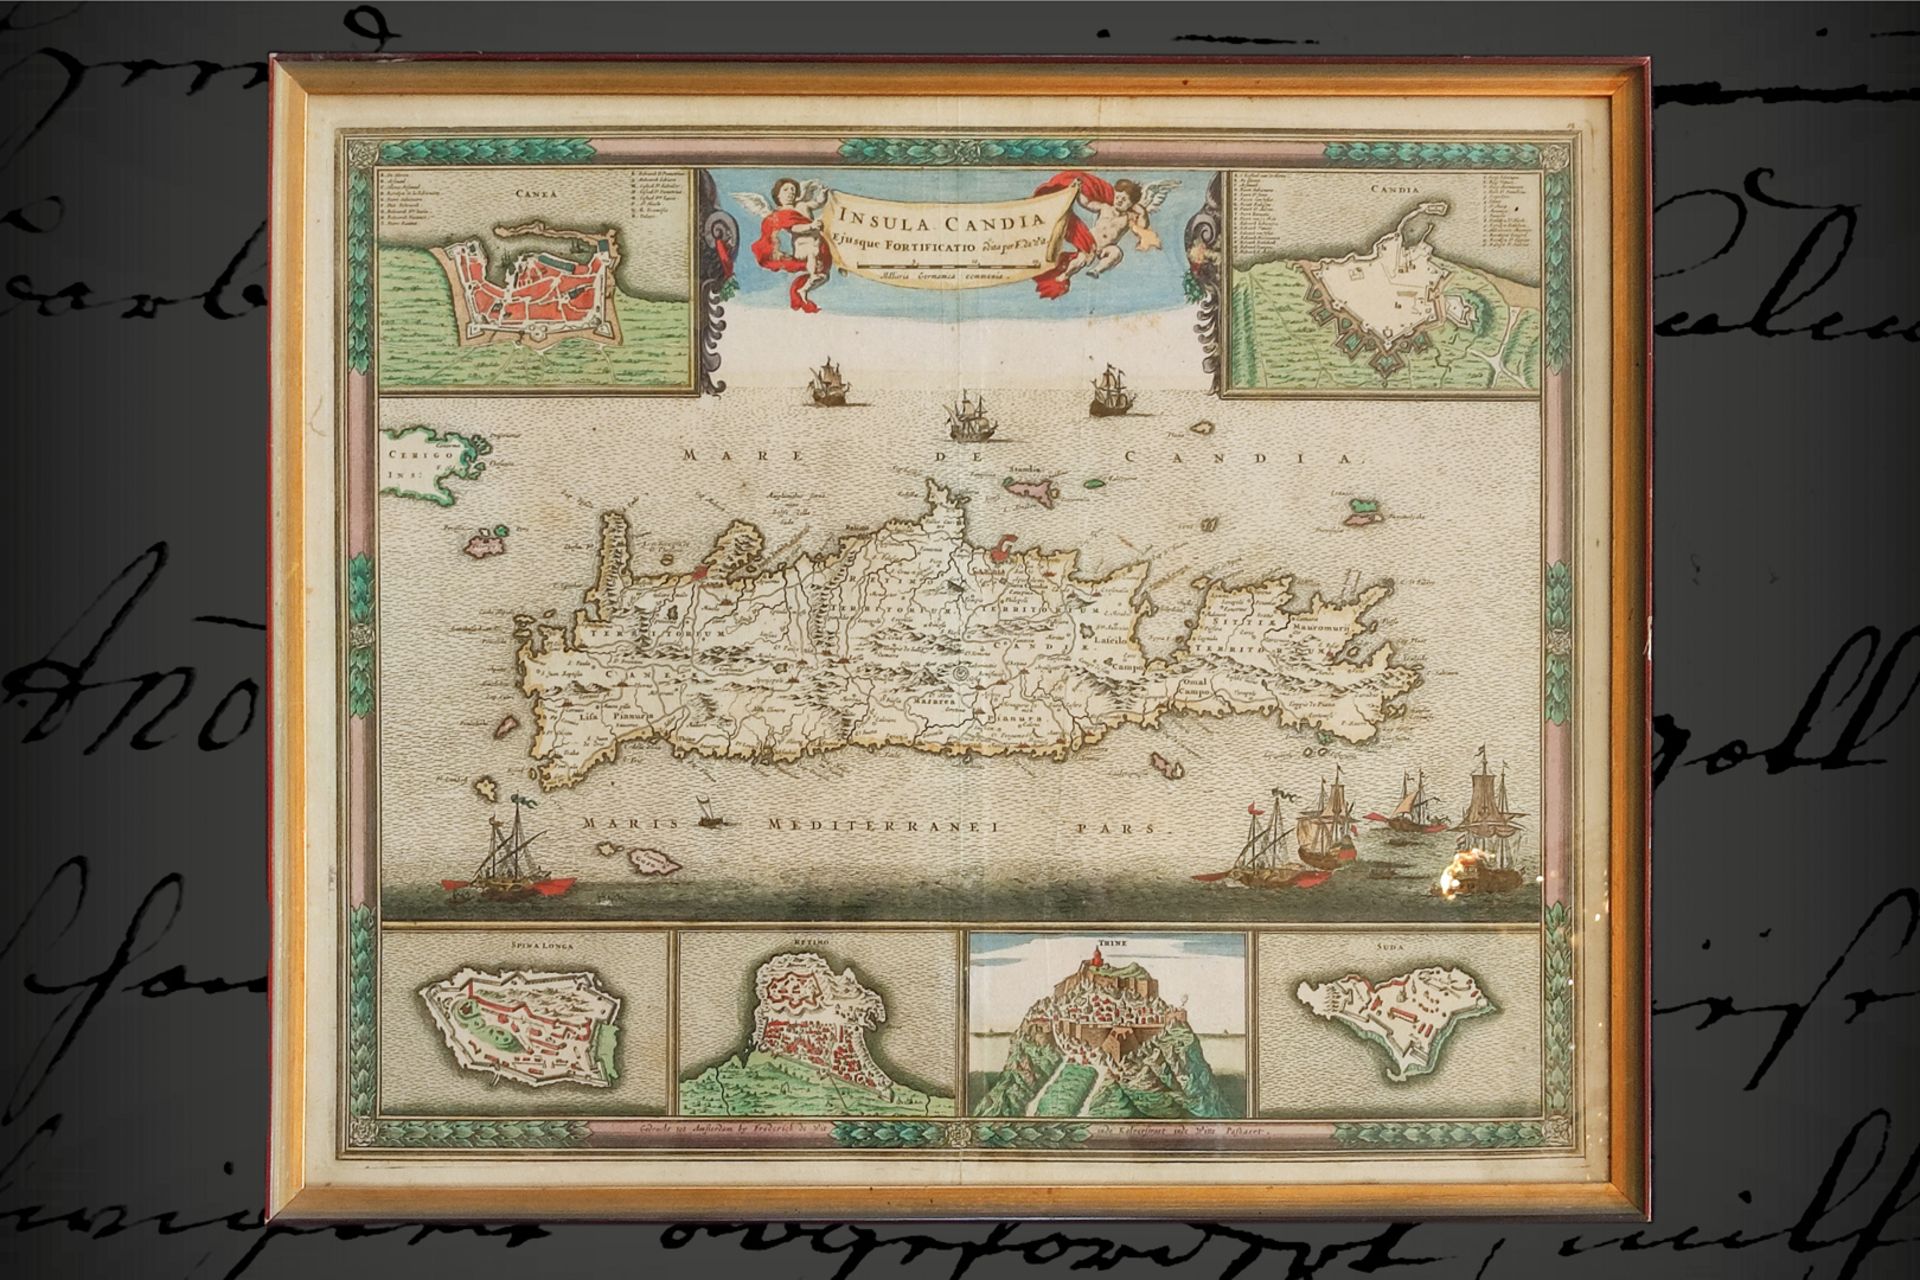 Kolorierter Stich, Karte von ”Insula Candia”, handkoloriert, ”Eiusque Fortificato”, ”edita per F. de